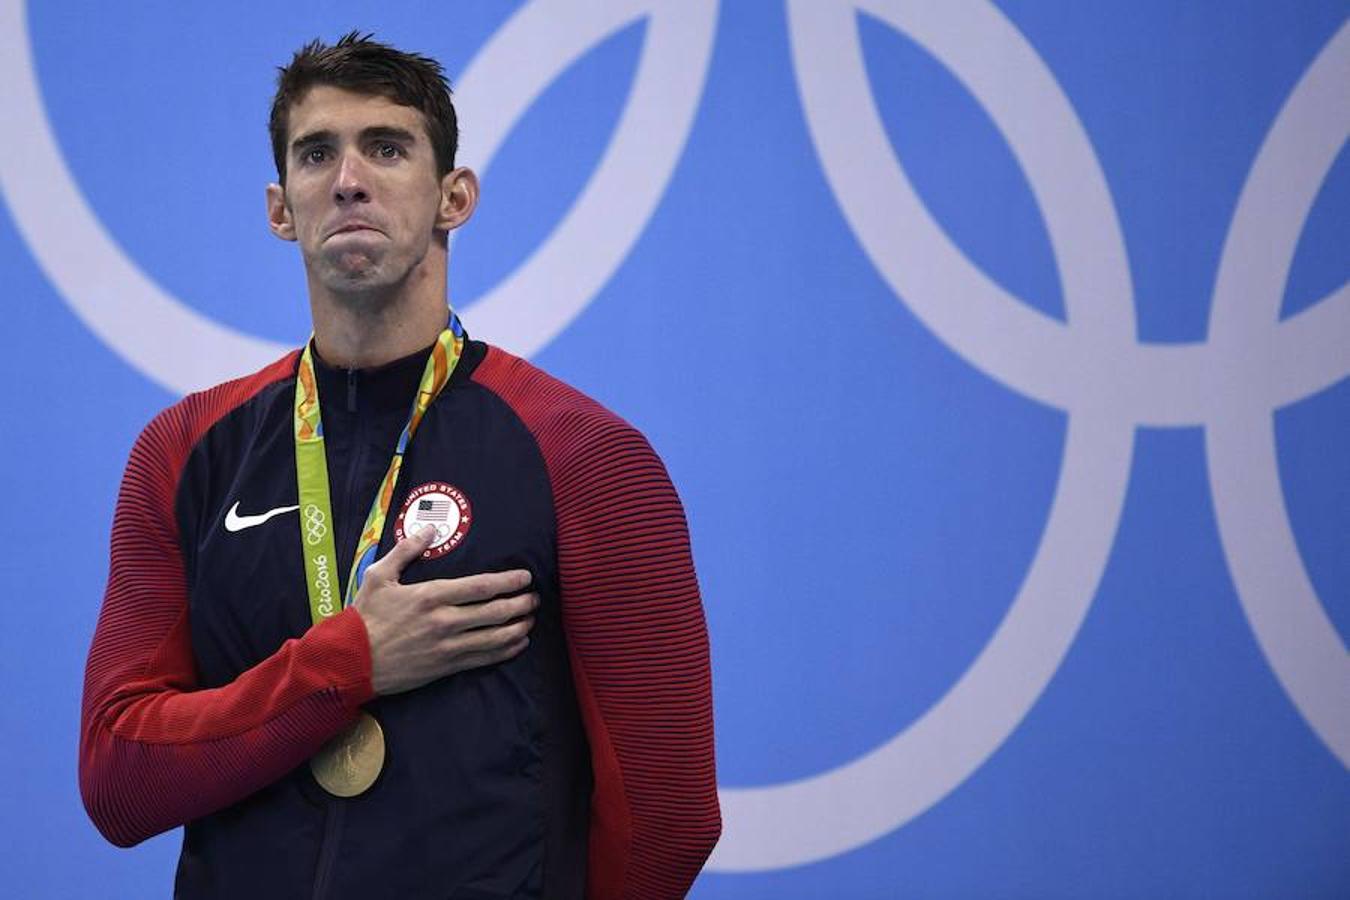 La emoción desbordó a Phelps en Rio 2016, su última gran competición. 